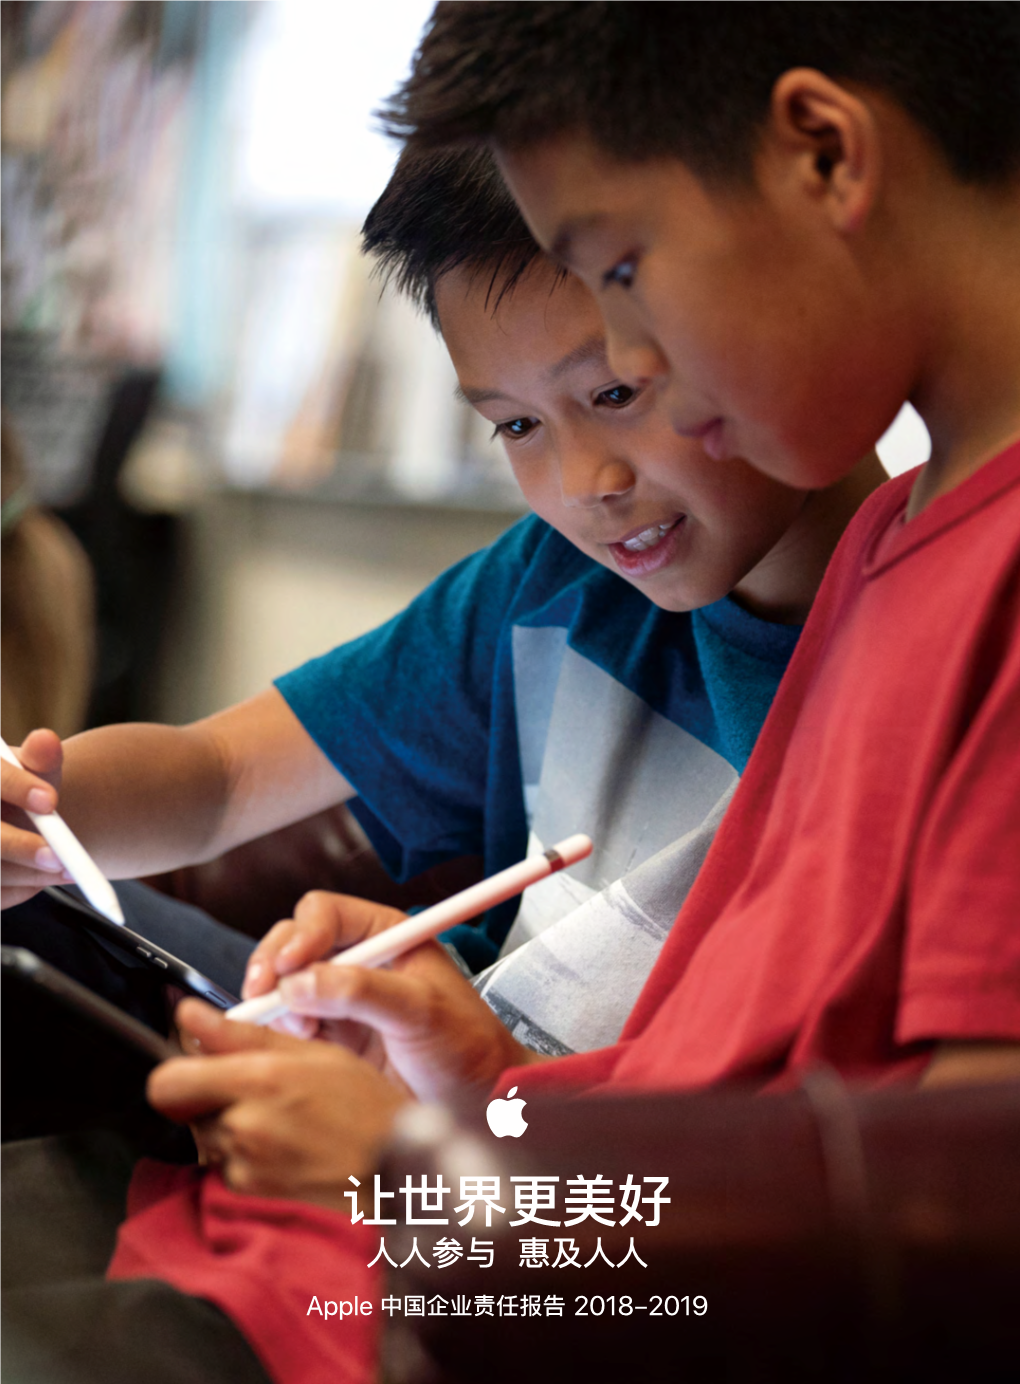 让世界更美好 人人参与 惠及人人 Apple 中国企业责任报告 2018-2019 Apple 中国企业责任报告 2018-2019 责任创变 共谋发展 1 目录